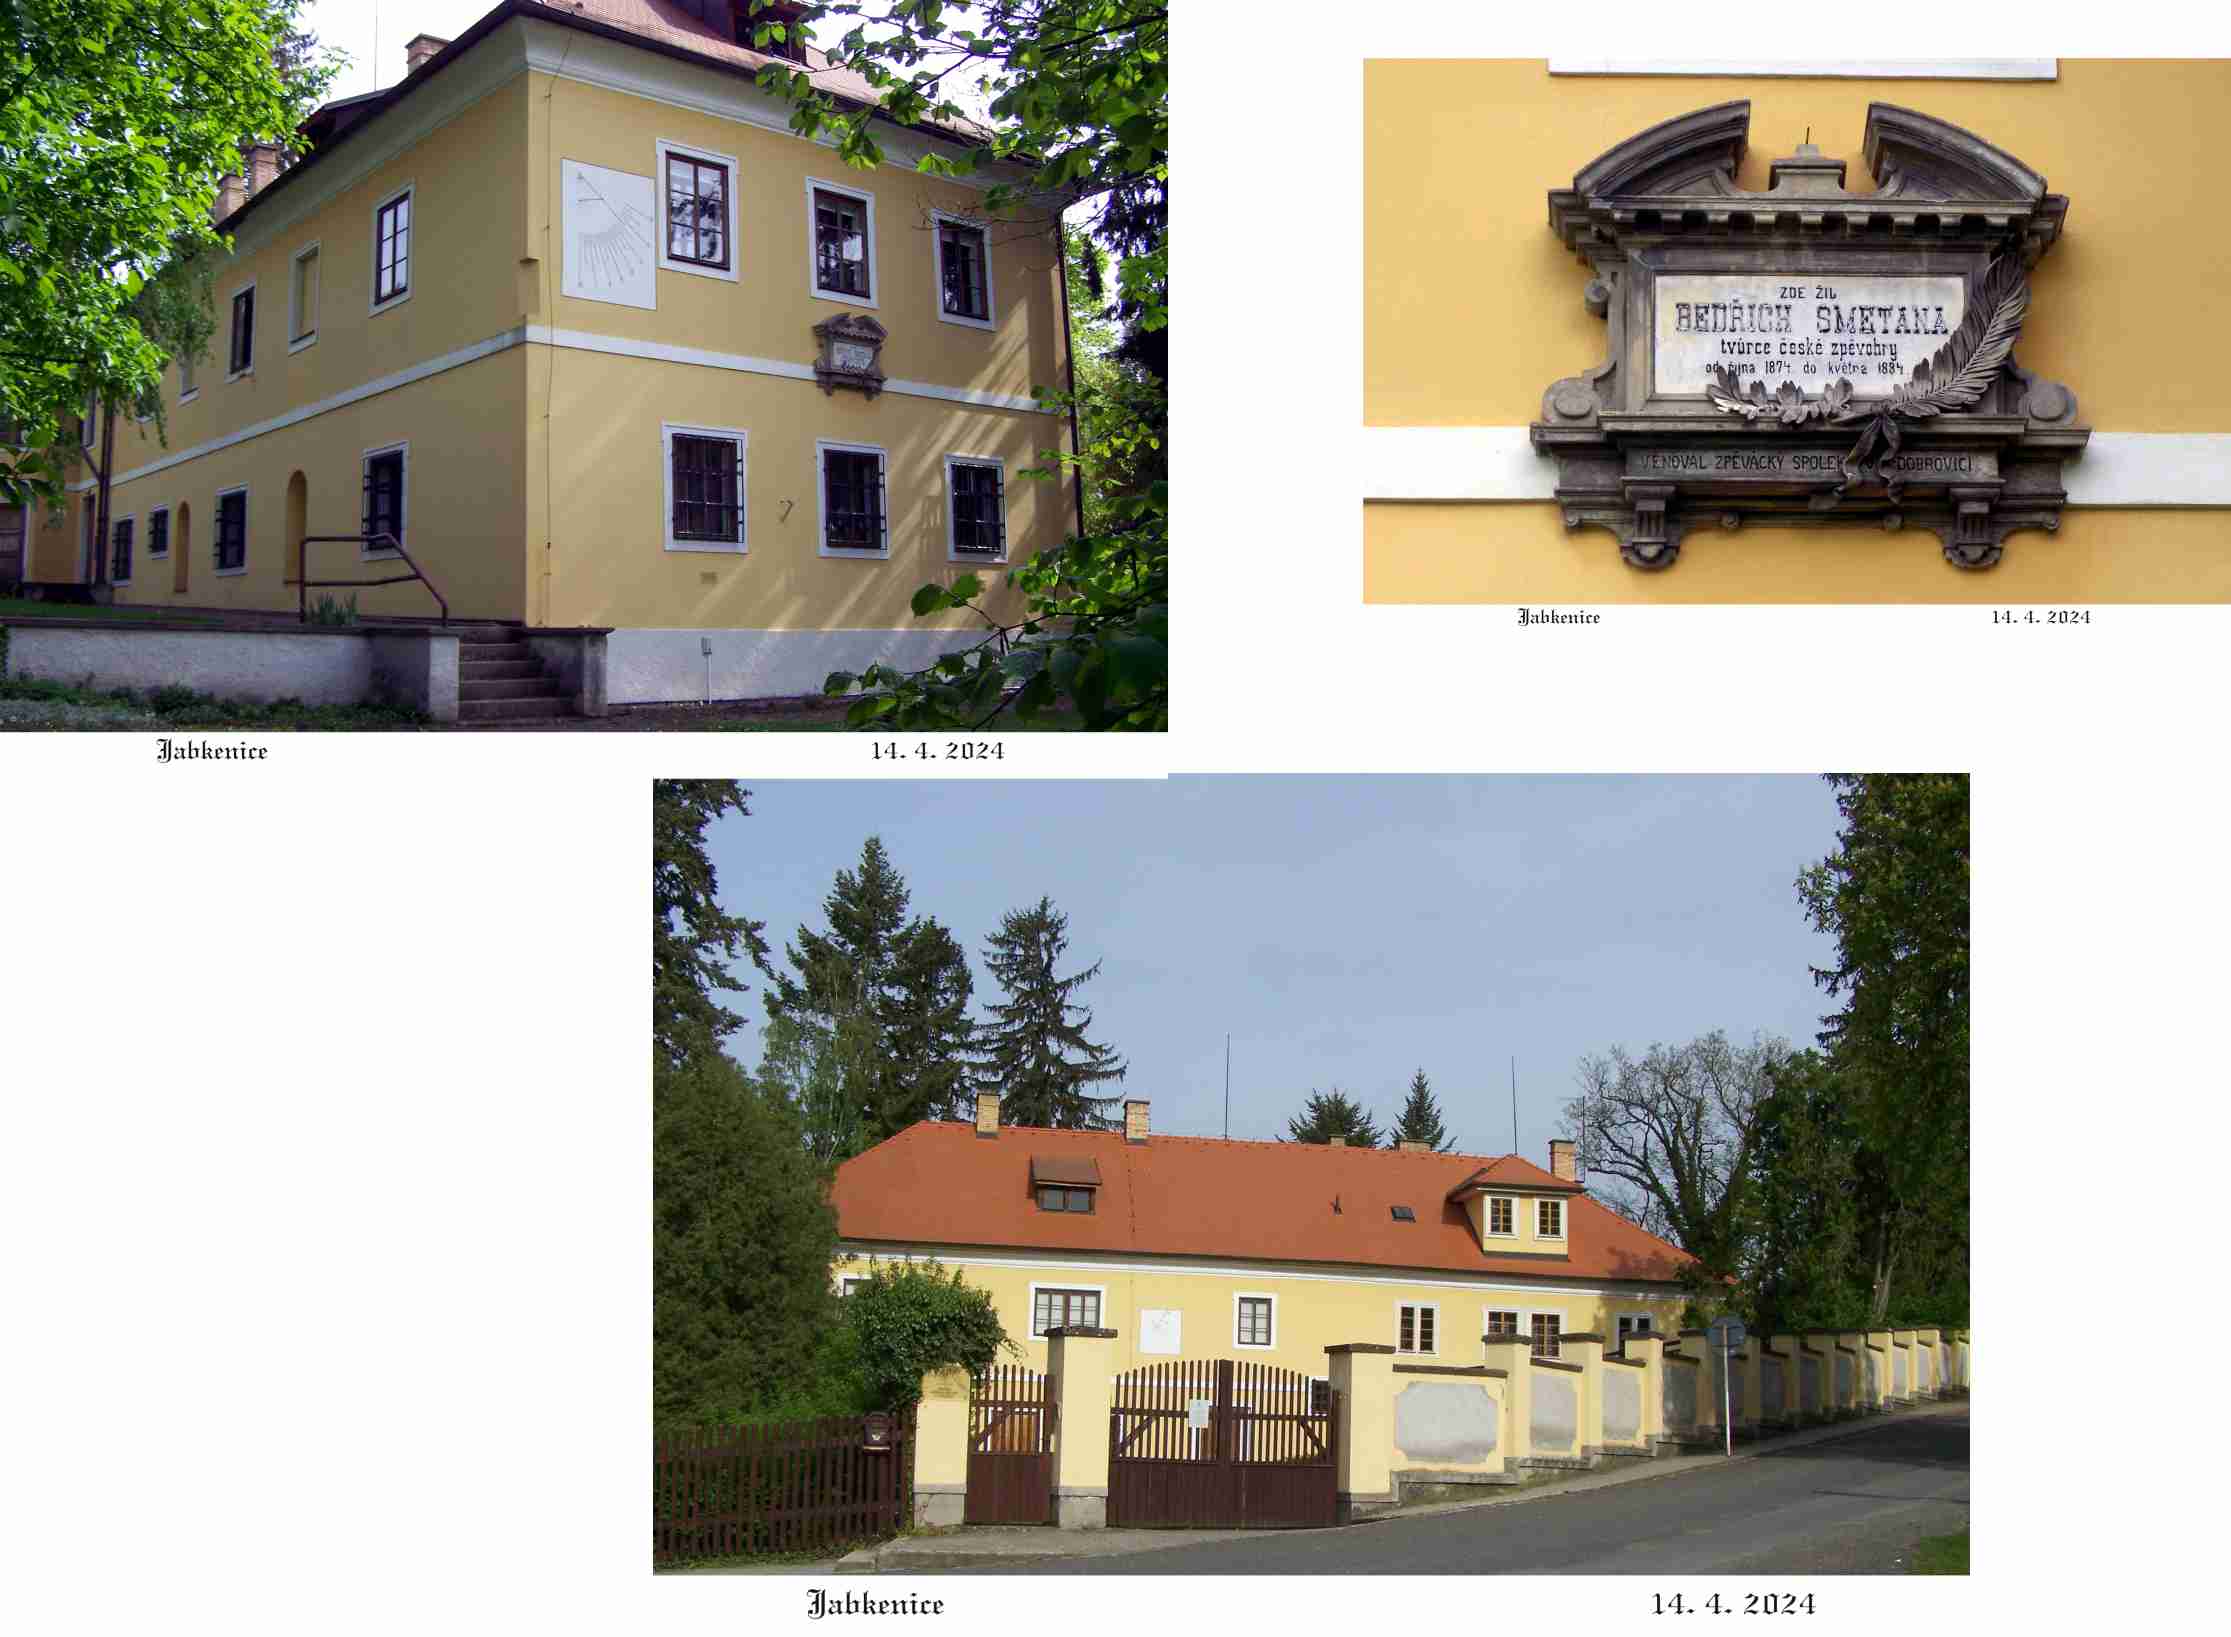 Památník Bedřicha Smetany je umístěný v budově bývalé knížecí lesní správy.